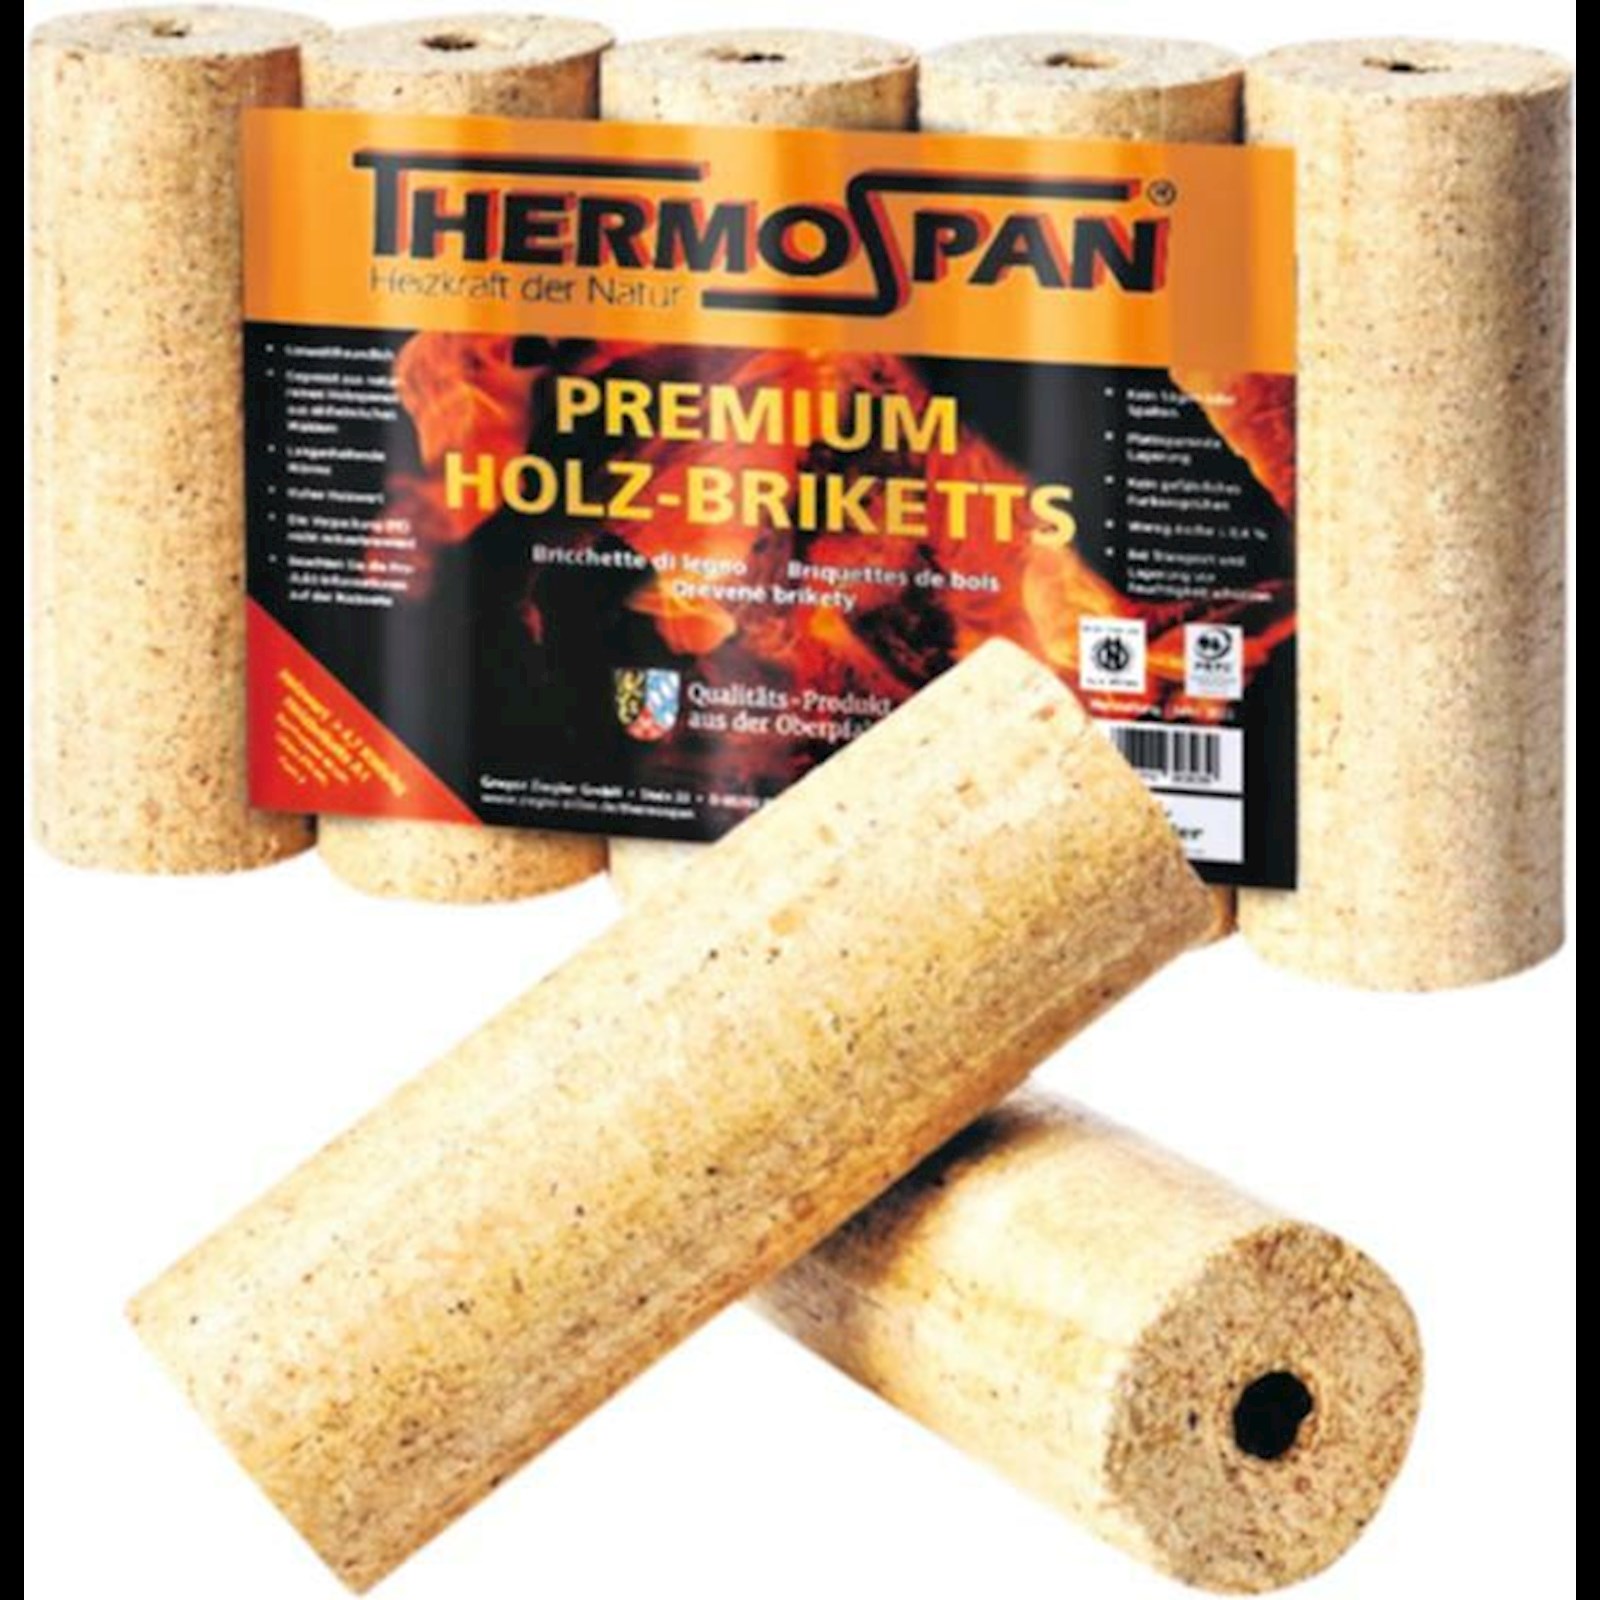 Briquettes de bois Caldo 10 kg Acheter - Briquettes de chauffage - LANDI